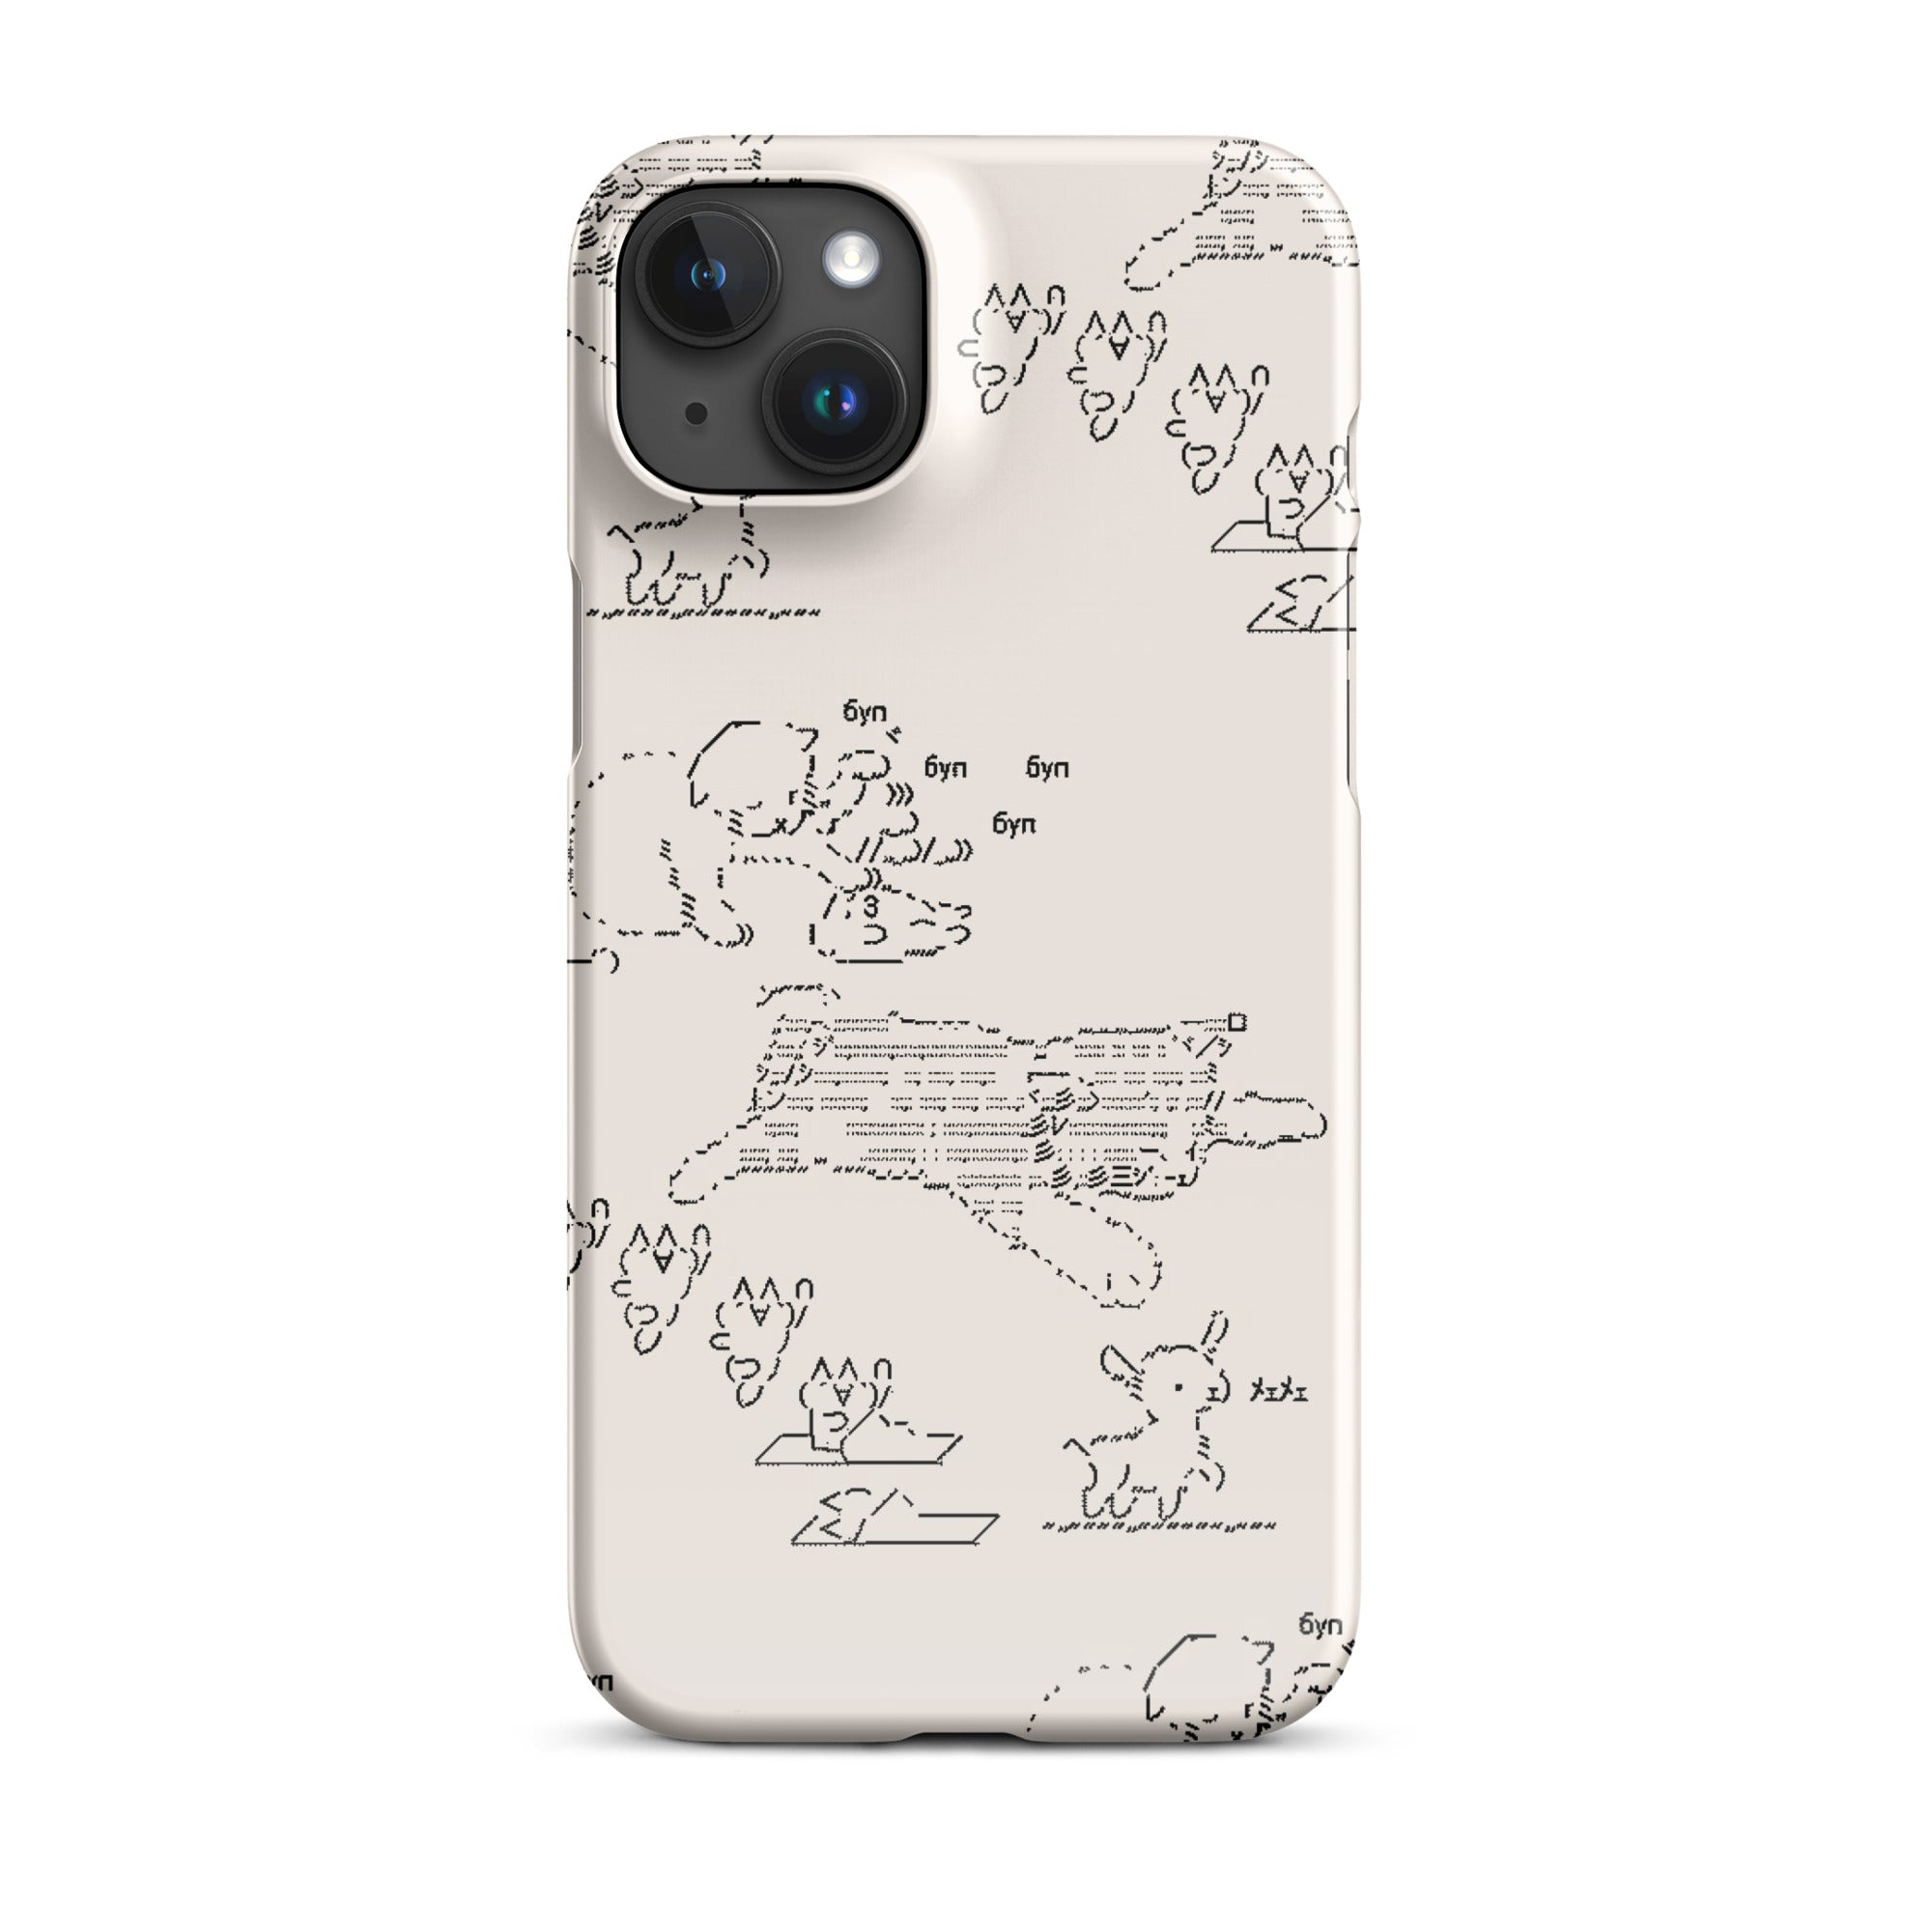 HYPER CUTE® iPhone® snap case